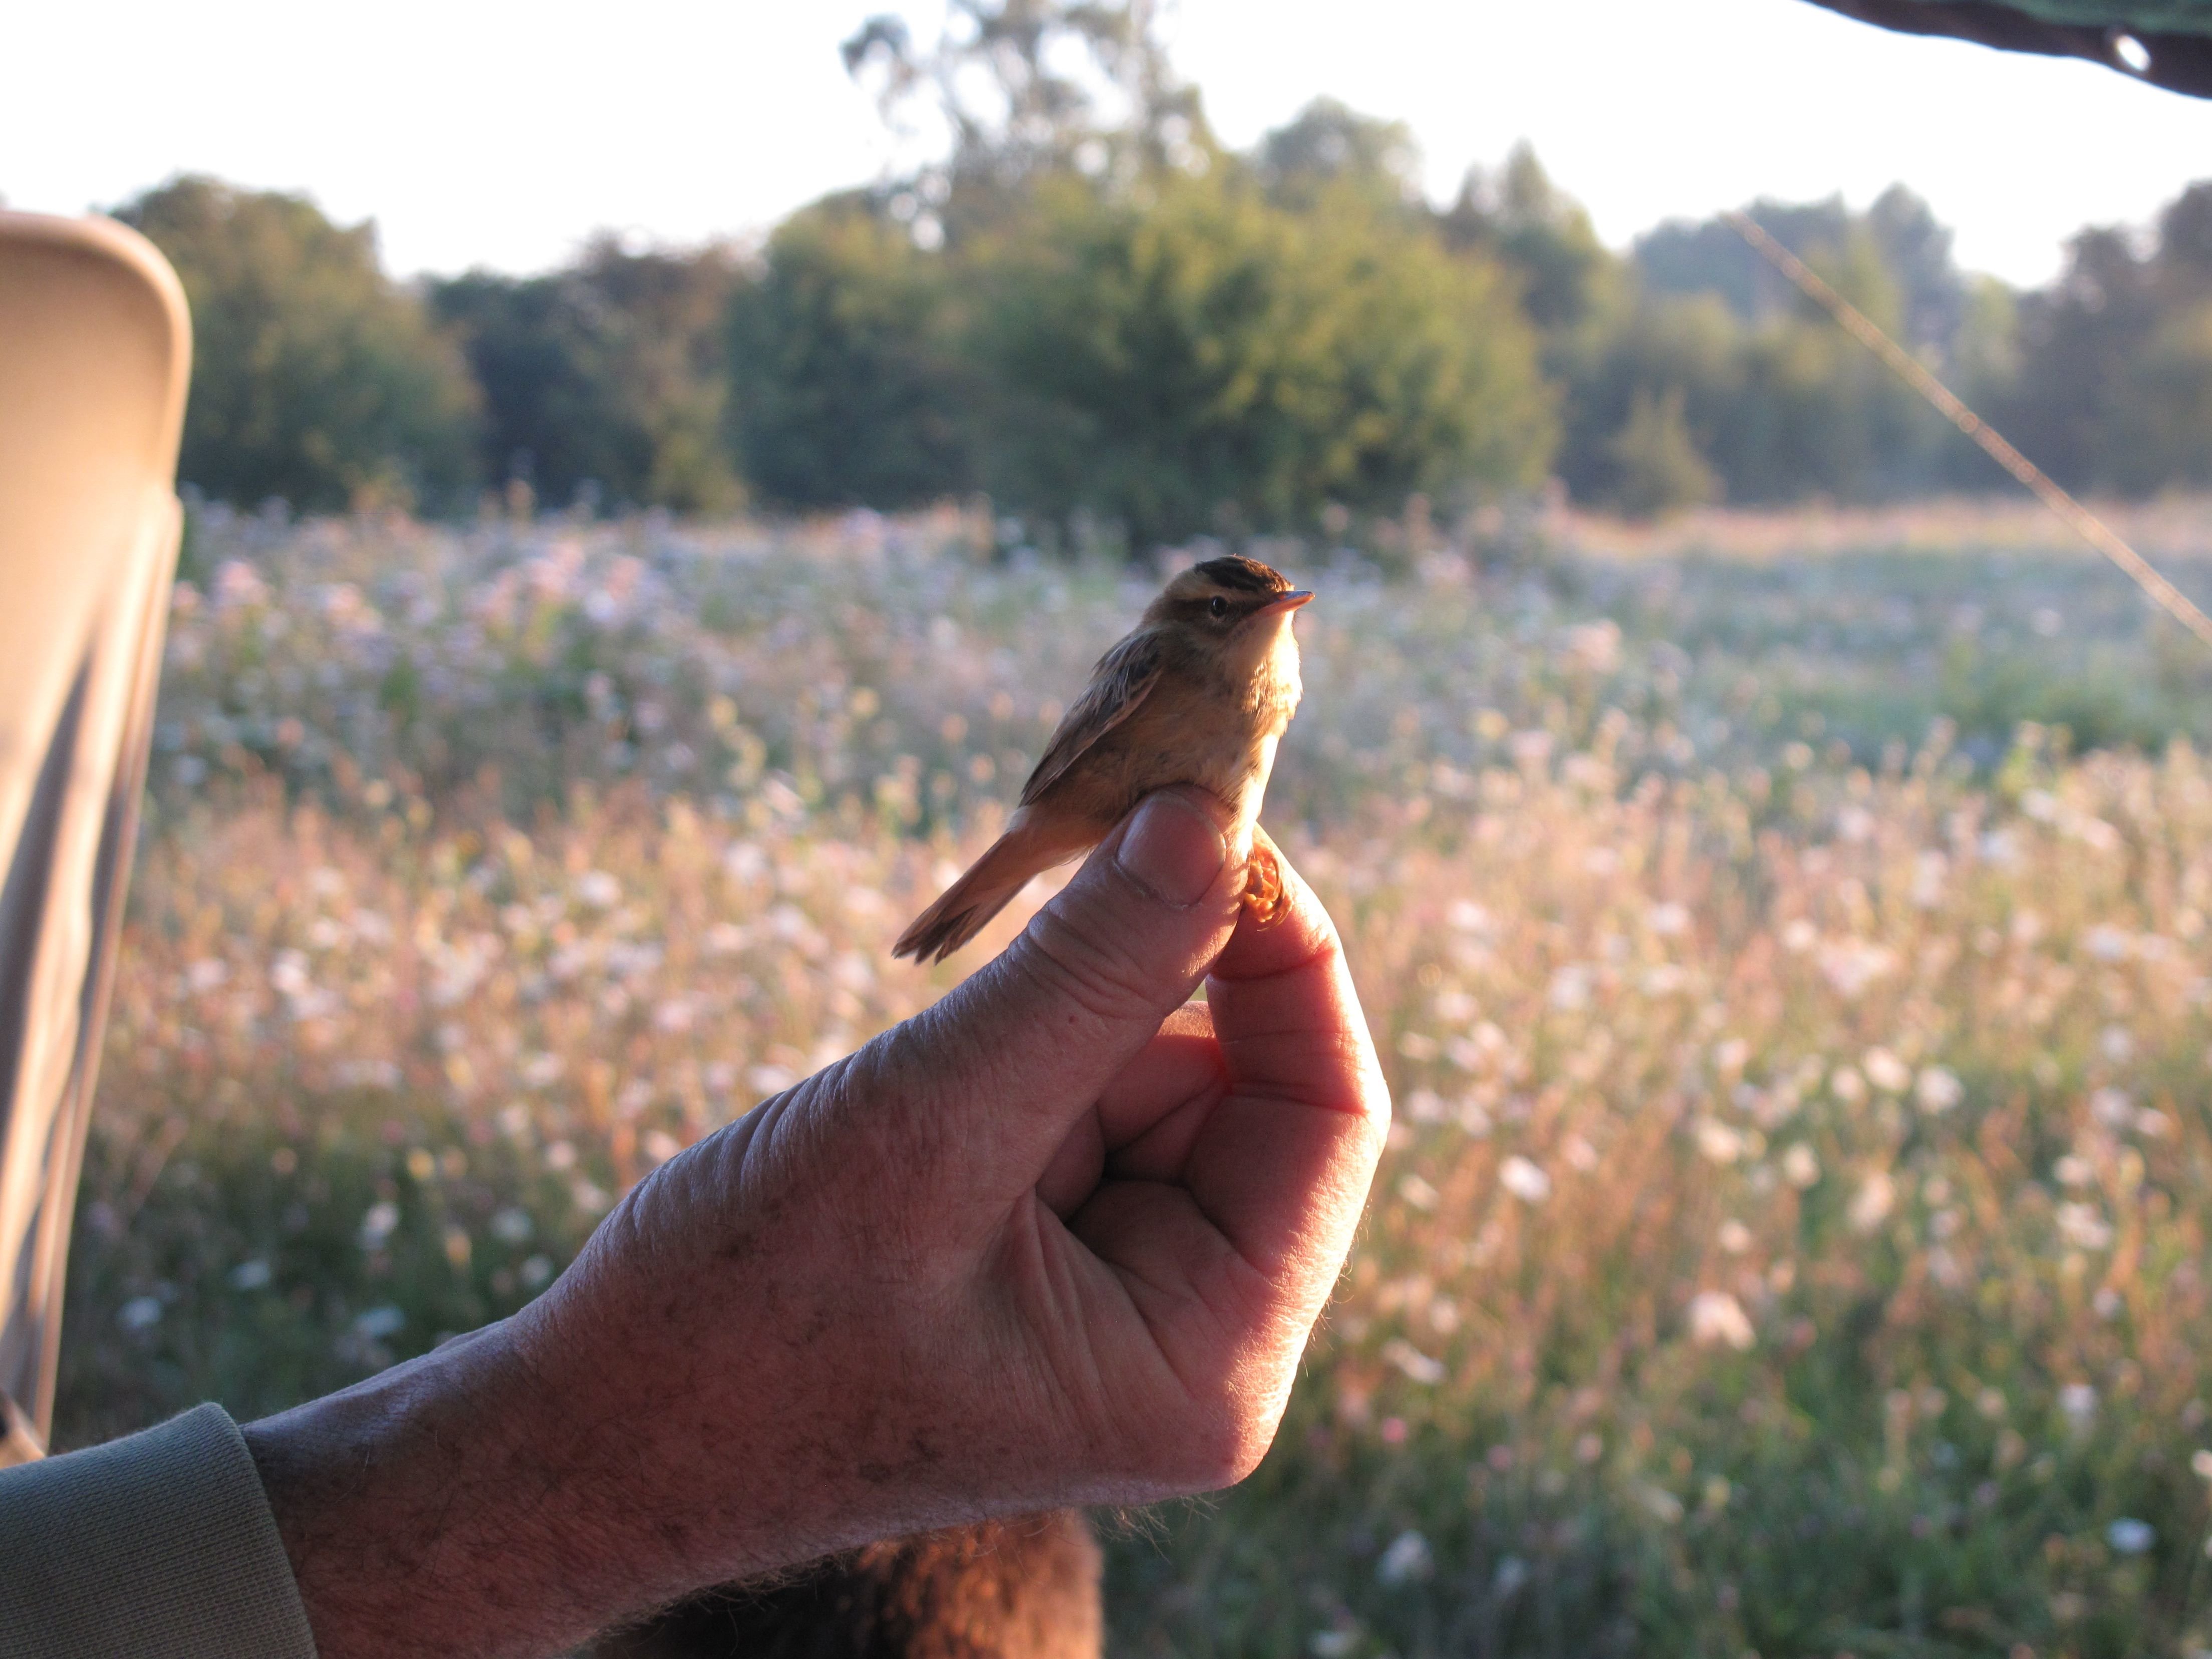 Le marais de Sacy (Oise), ici le jeudi 11 août, accueille 195 espèces d’oiseaux, contre 40 dans un jardin public classique. LP/Maëlle Roudaut